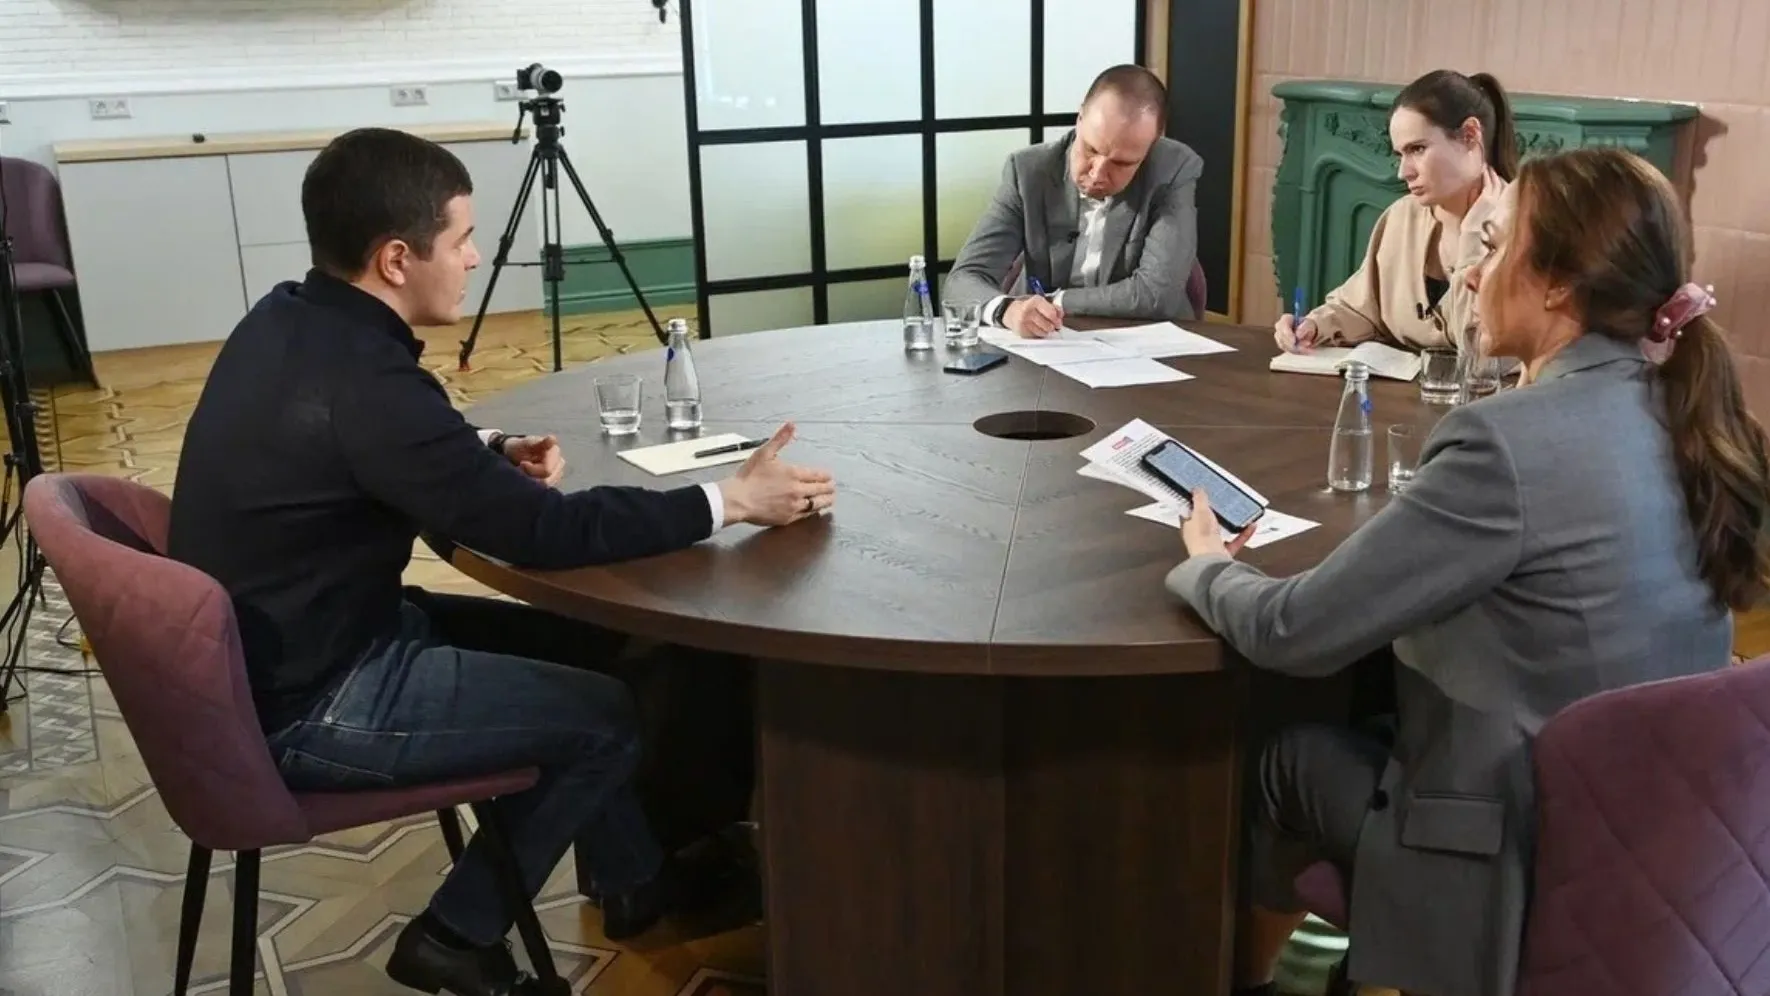 Дмитрий Артюхов рассказал в интервью уральским журналистам, как Ямал справляется со взятыми обязательствами. Фото: пресс-служба губернатора ЯНАО